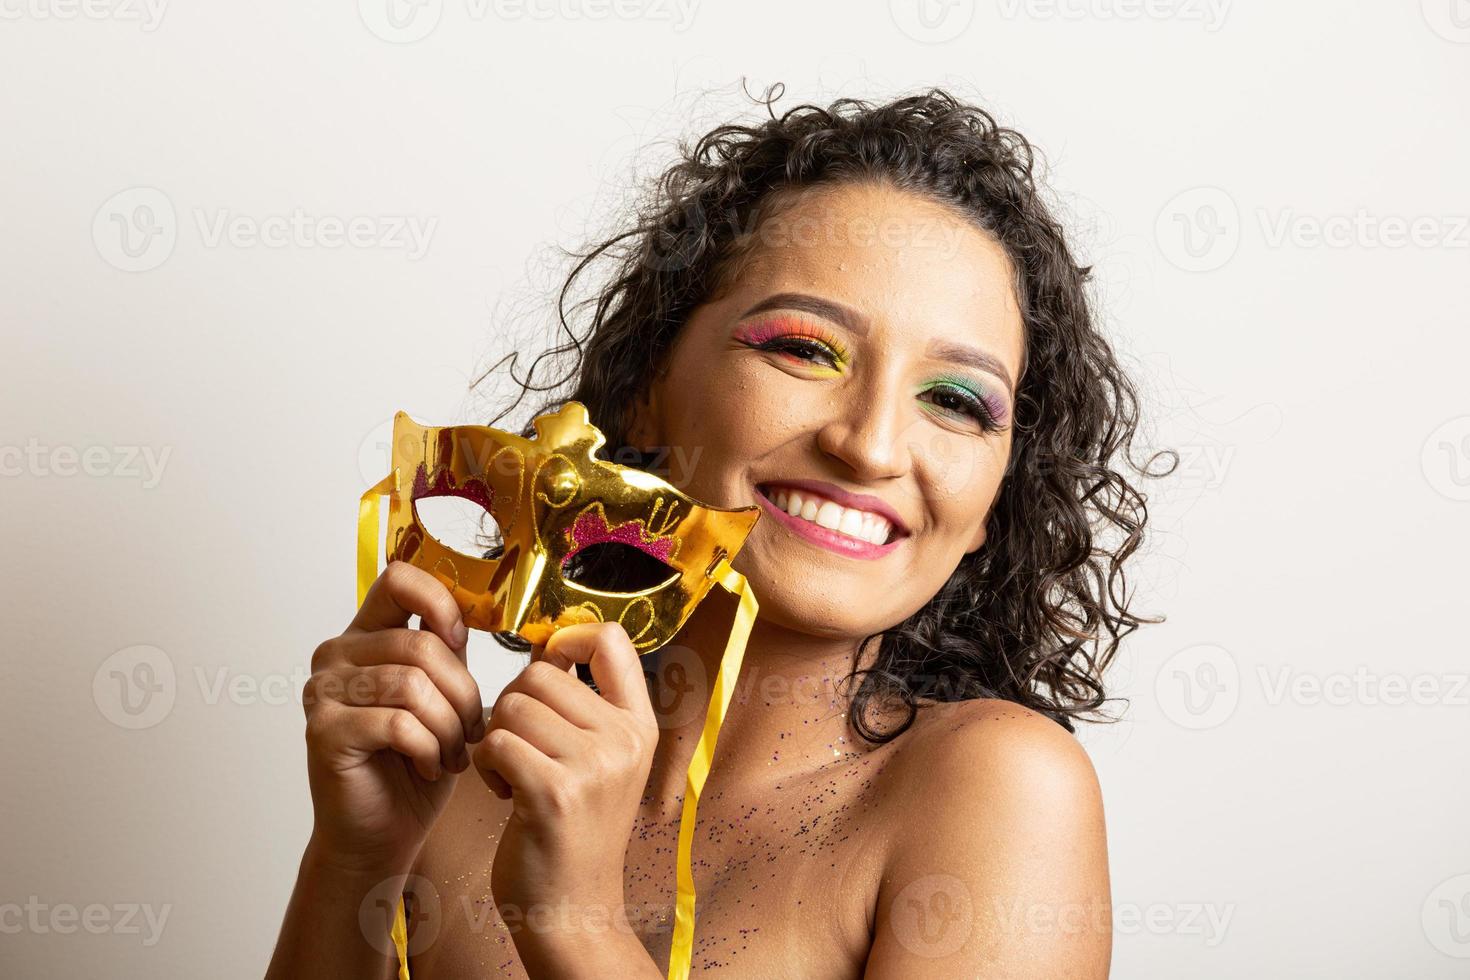 carnaval brasileño. mujer joven disfrazada disfrutando de la fiesta de carnaval. foto